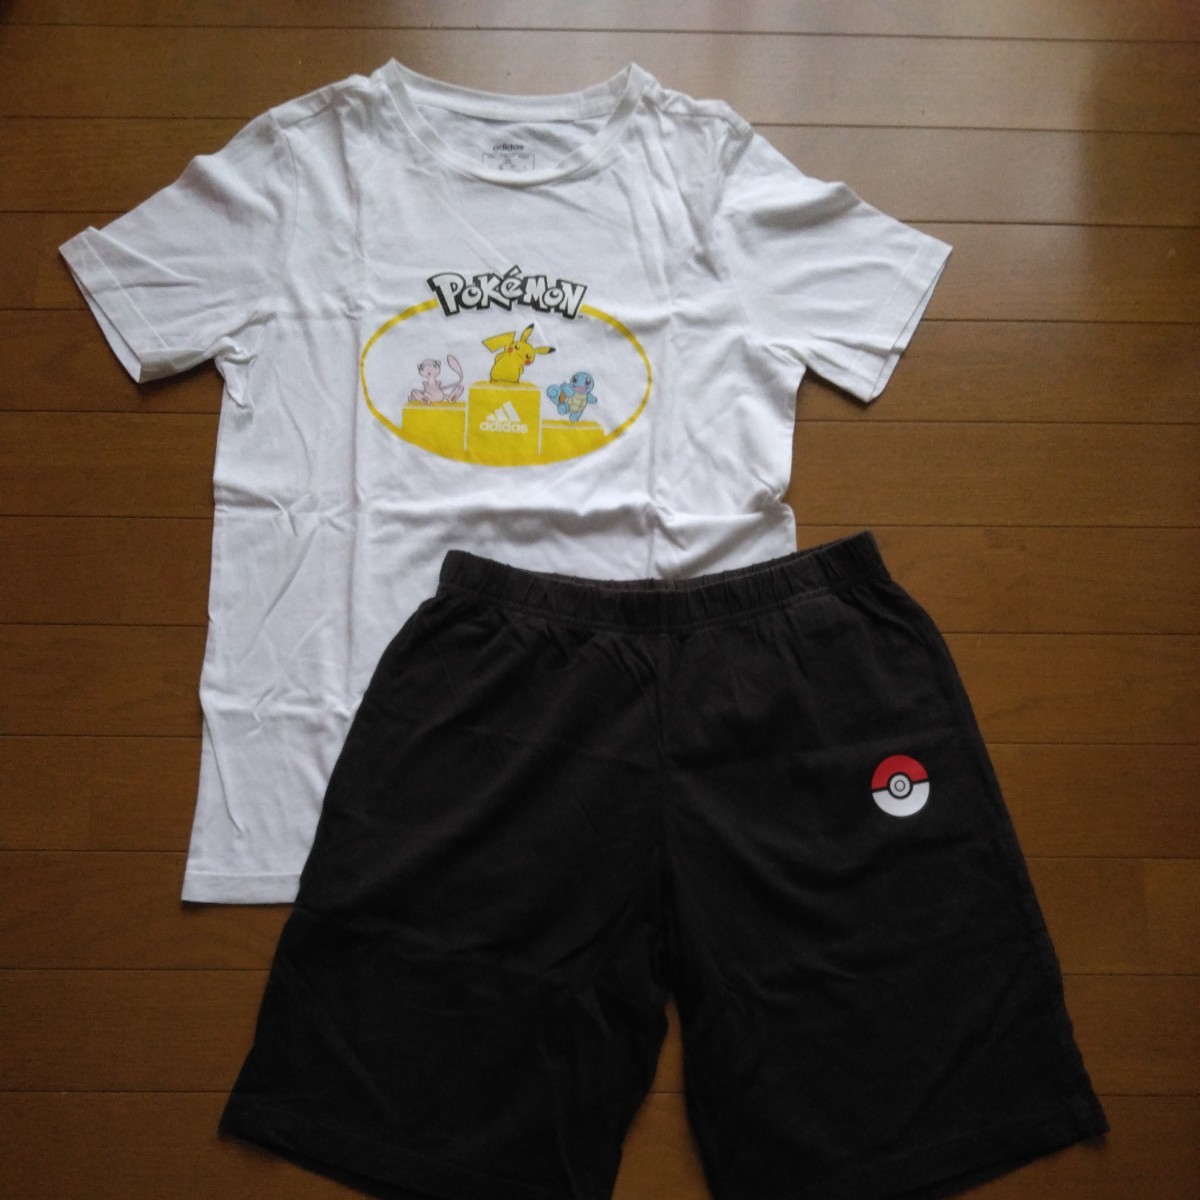  Pokemon adidas Adidas short sleeves * short pants top and bottom set 